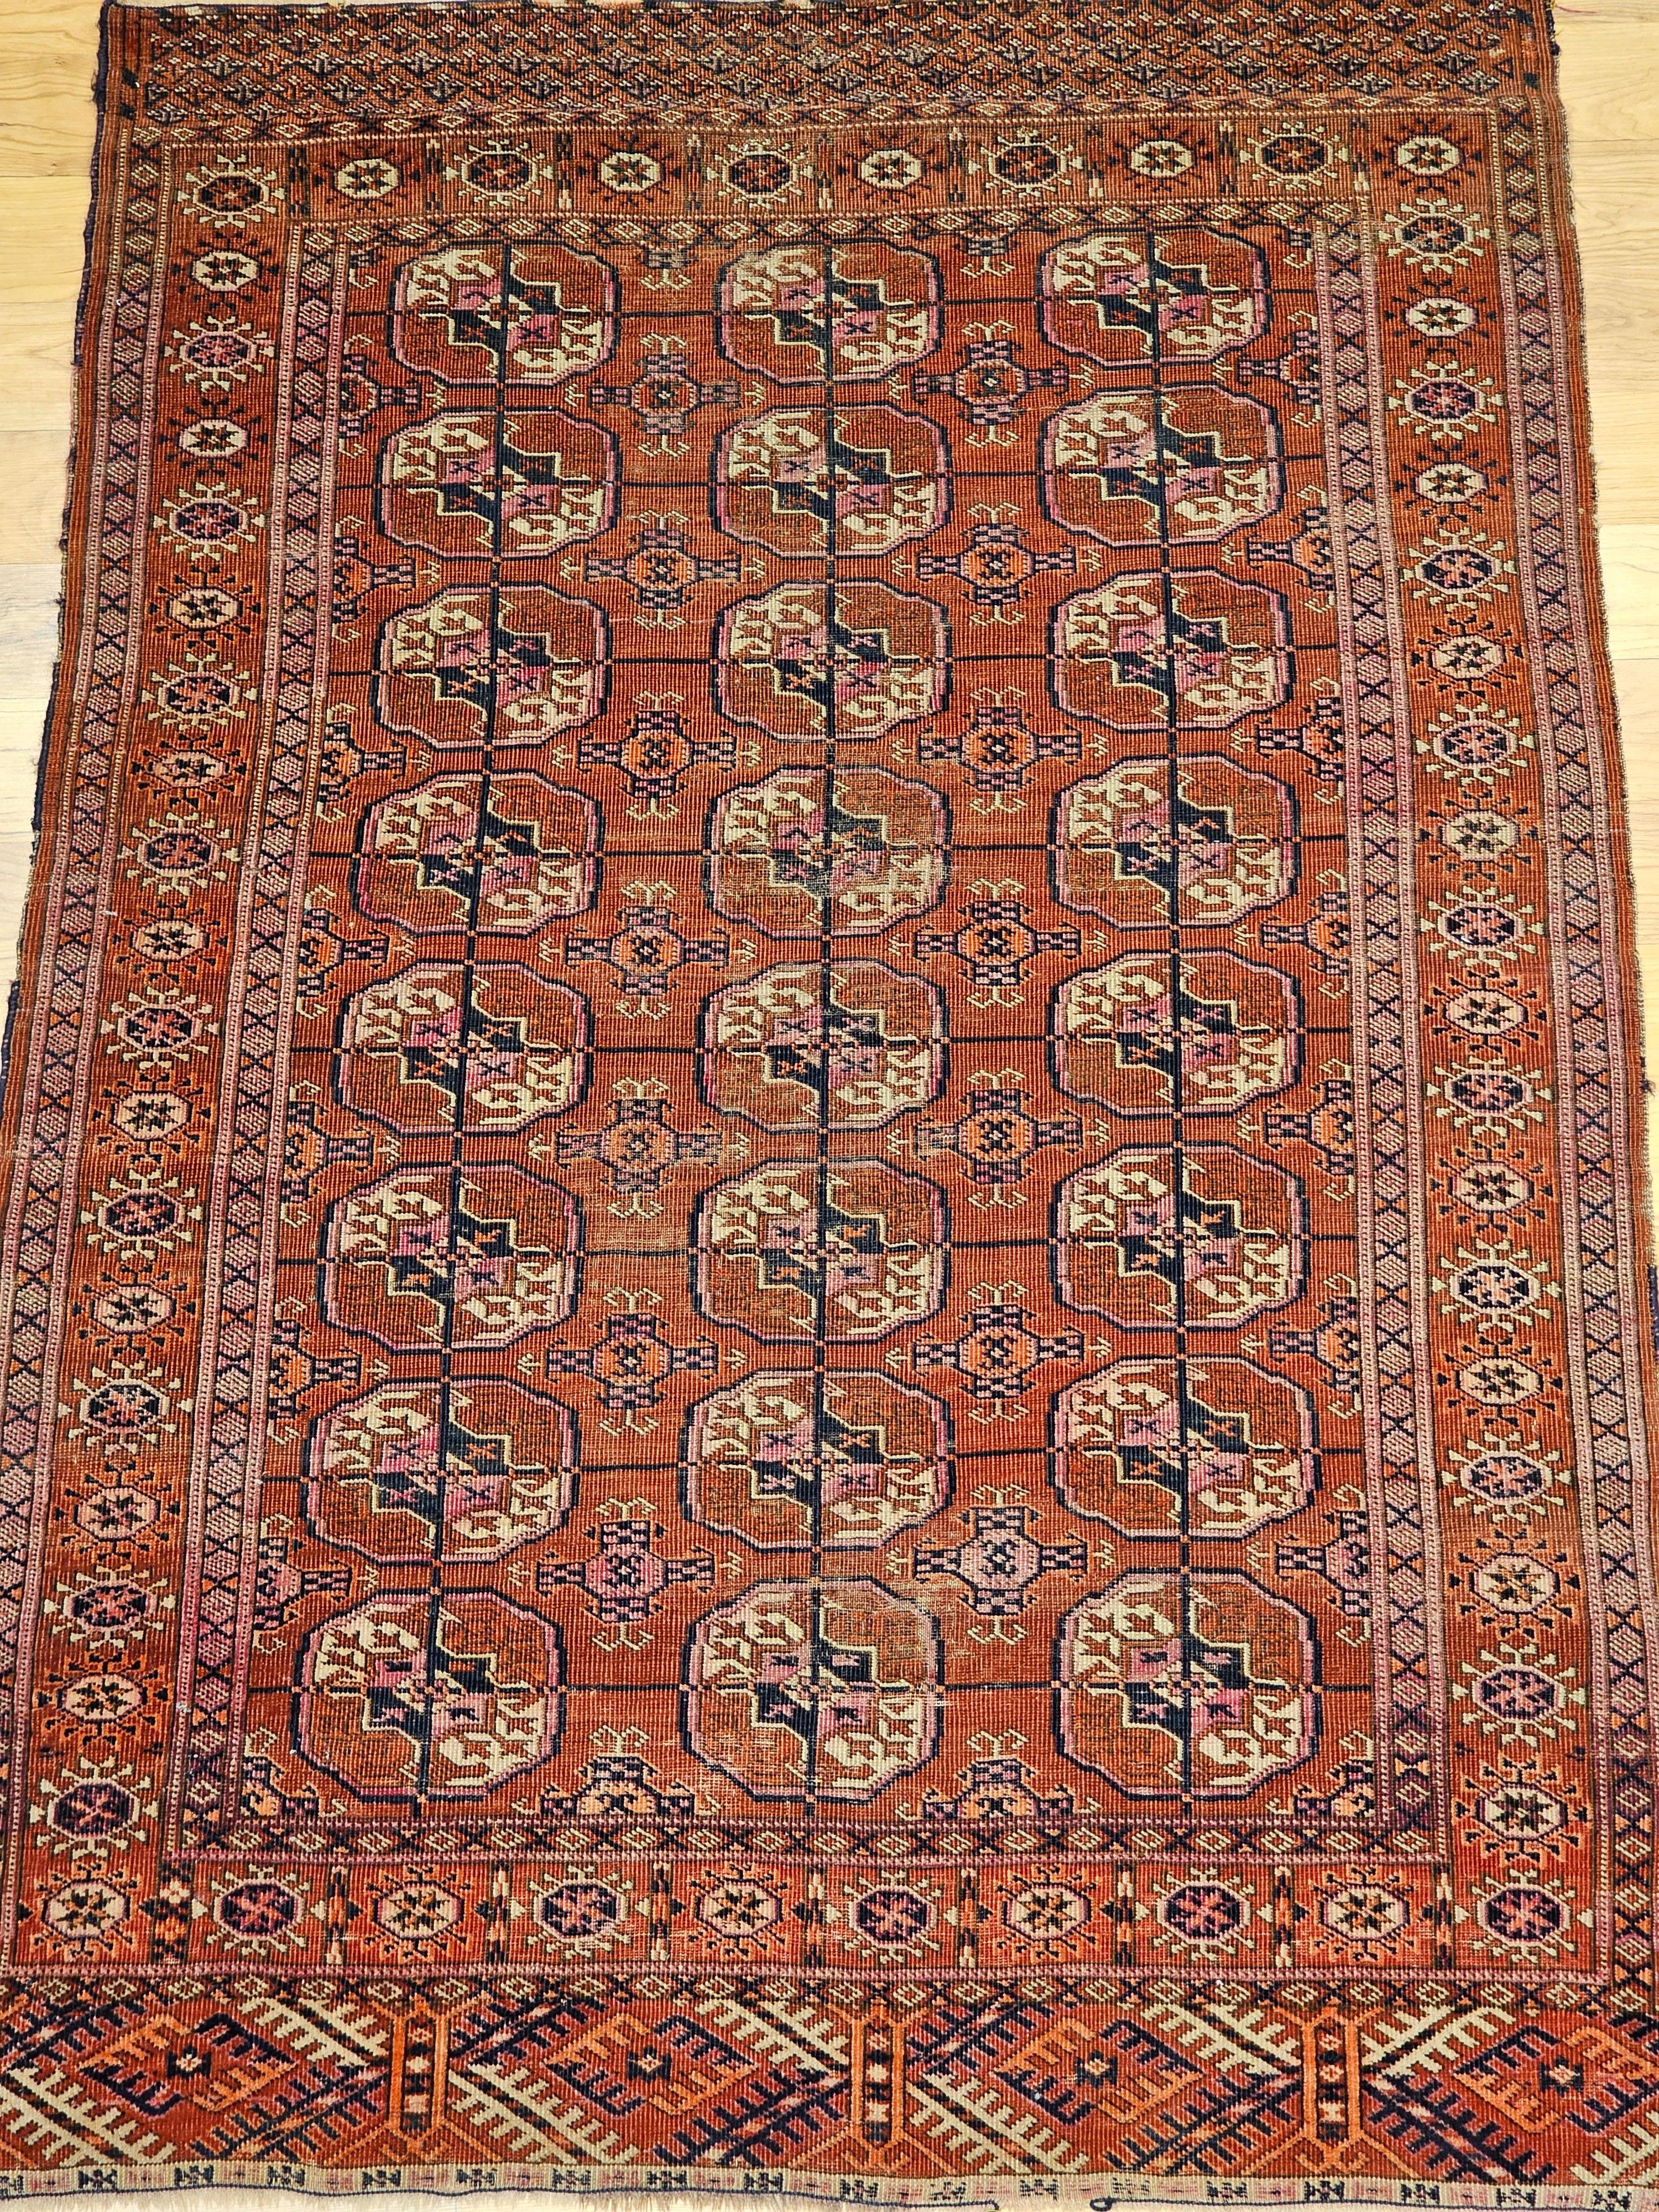 Vintage Turkmen Tekke Teppich in einem allover kleinen Medaillon-Muster aus den frühen 1900er Jahren.  Der Teppich hat eine schöne und anmutige ziegelrote Hintergrundfarbe.  Die Medaillons sind in den Farben ziegelrot, marineblau, gelb und rosa